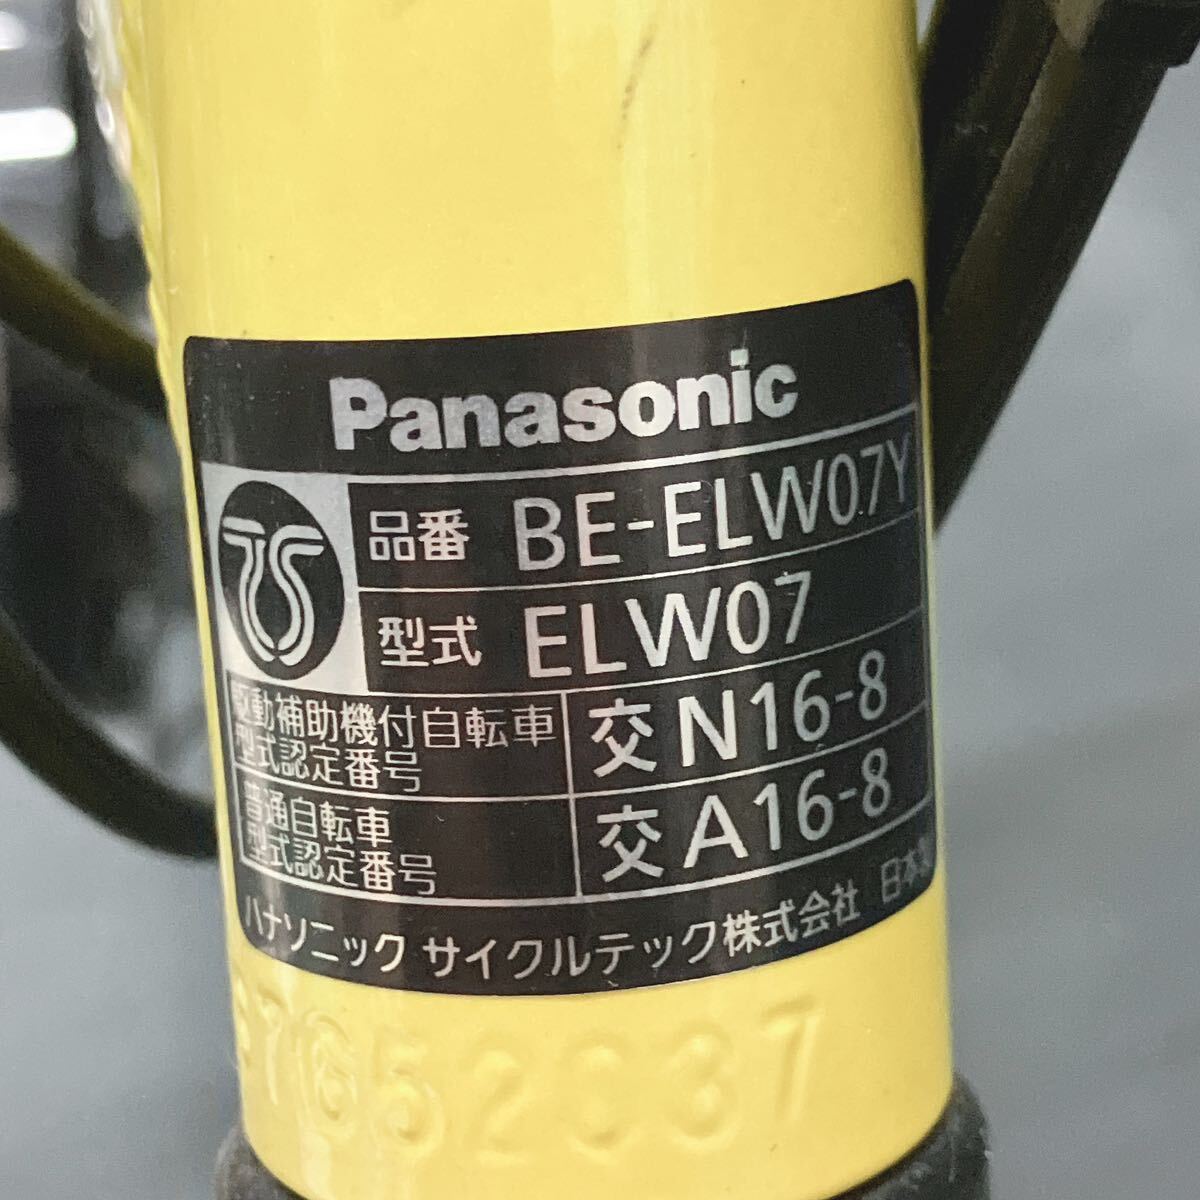  рабочий товар Panasonic Panasonic складной велосипед с электроприводом off время BE-ELW07Y желтый принадлежности имеется стоимость доставки супер-скидка R.0422